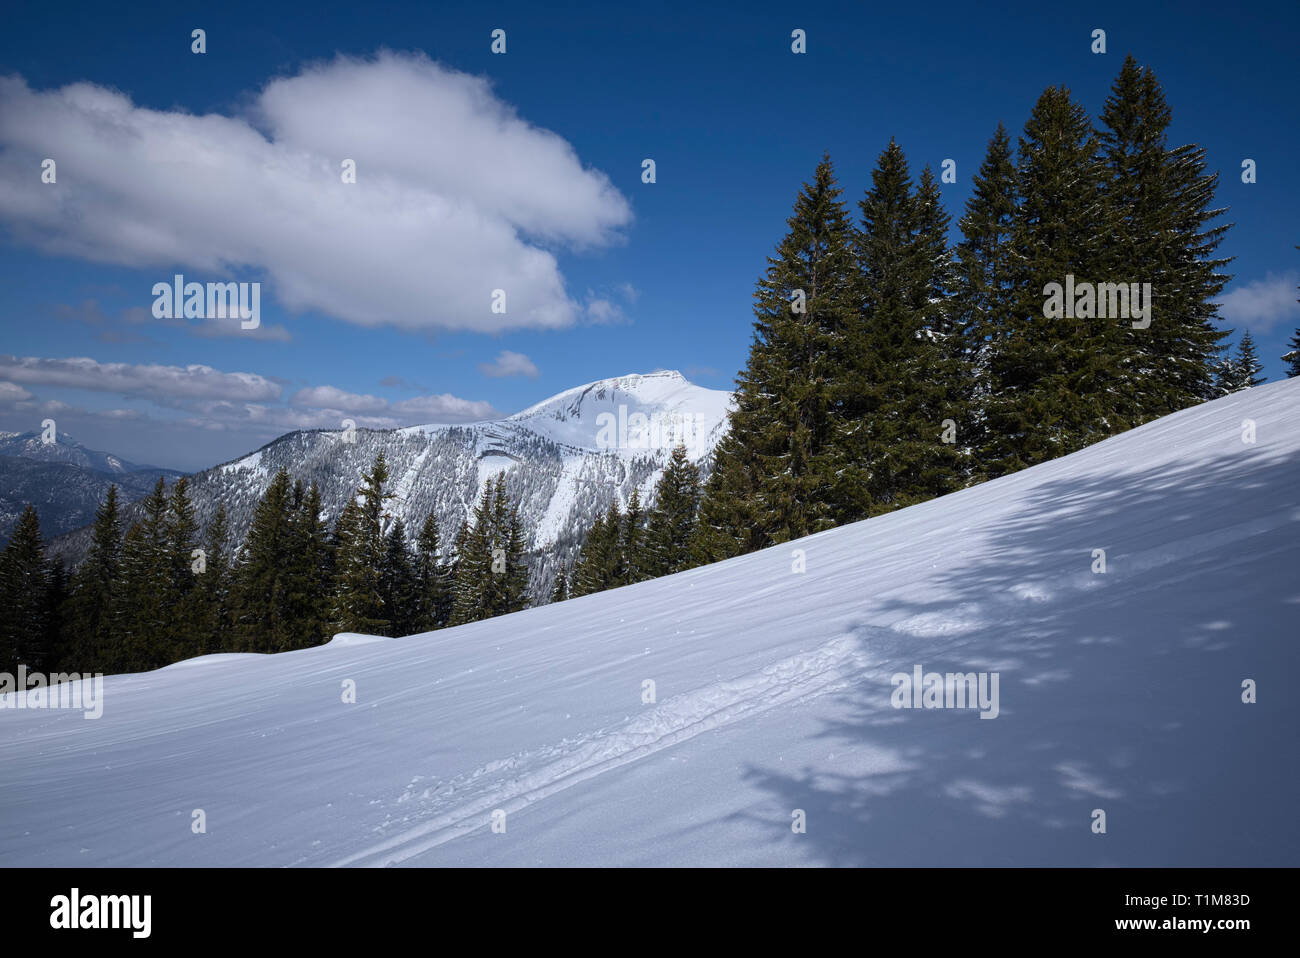 Les pistes de ski et de raquette de neige en face de Karwendel, Tyrol, Autriche Banque D'Images